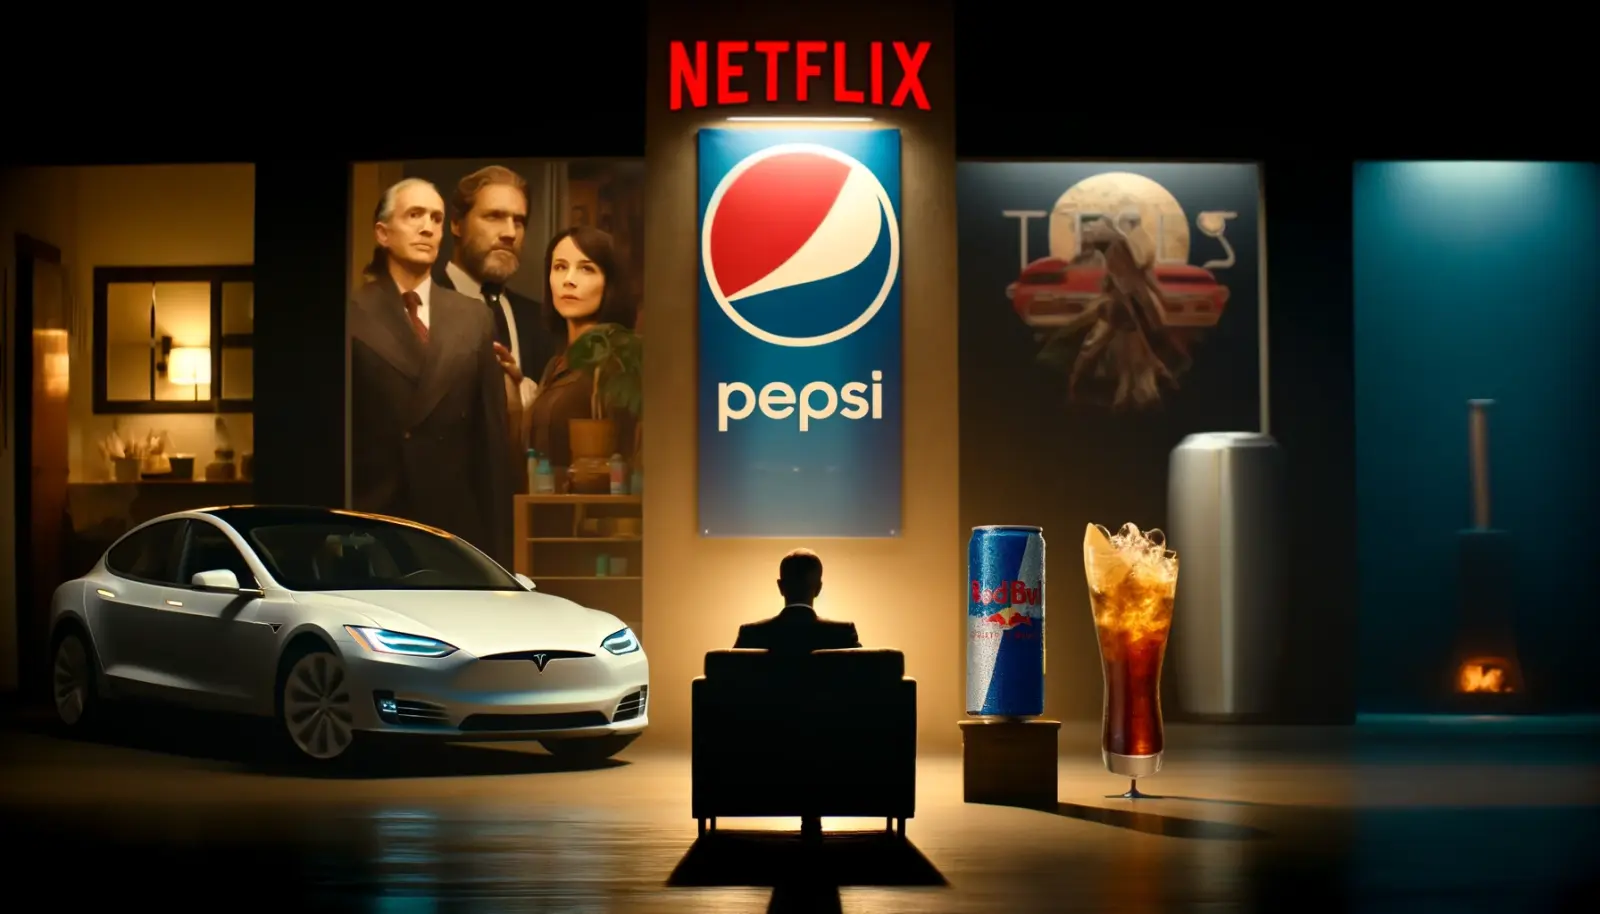 Co zaszkodziło Netflixowi i PepsiCo, a wzmocniło Teslę